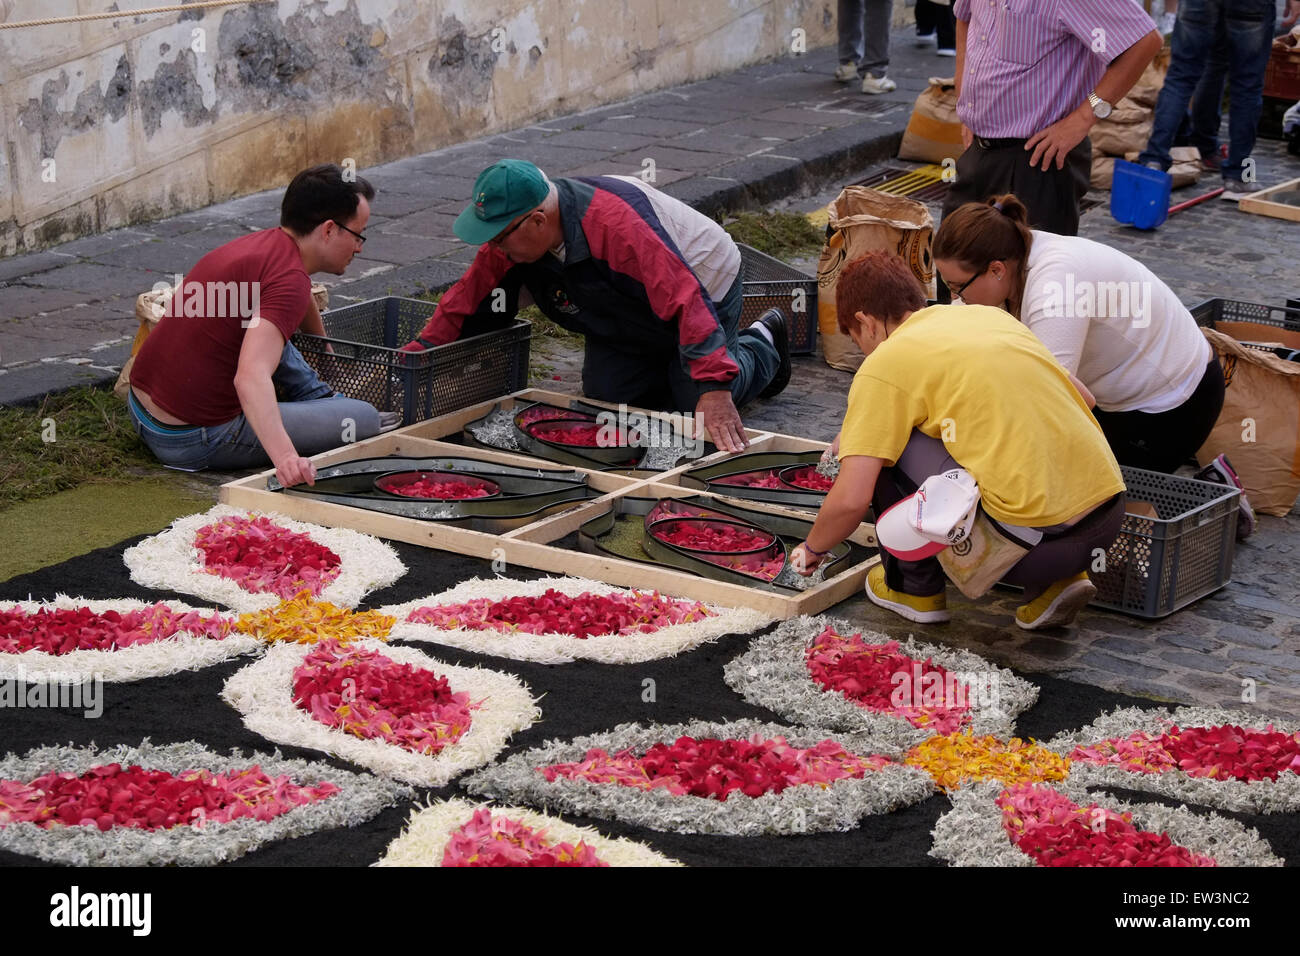 La gente local creando elaborar imágenes de coloridos pétalos de flores y  semillas de pasto durante el Corpus Christi, alfombra o evento de alfombra  de flores en la ciudad de La Orotava